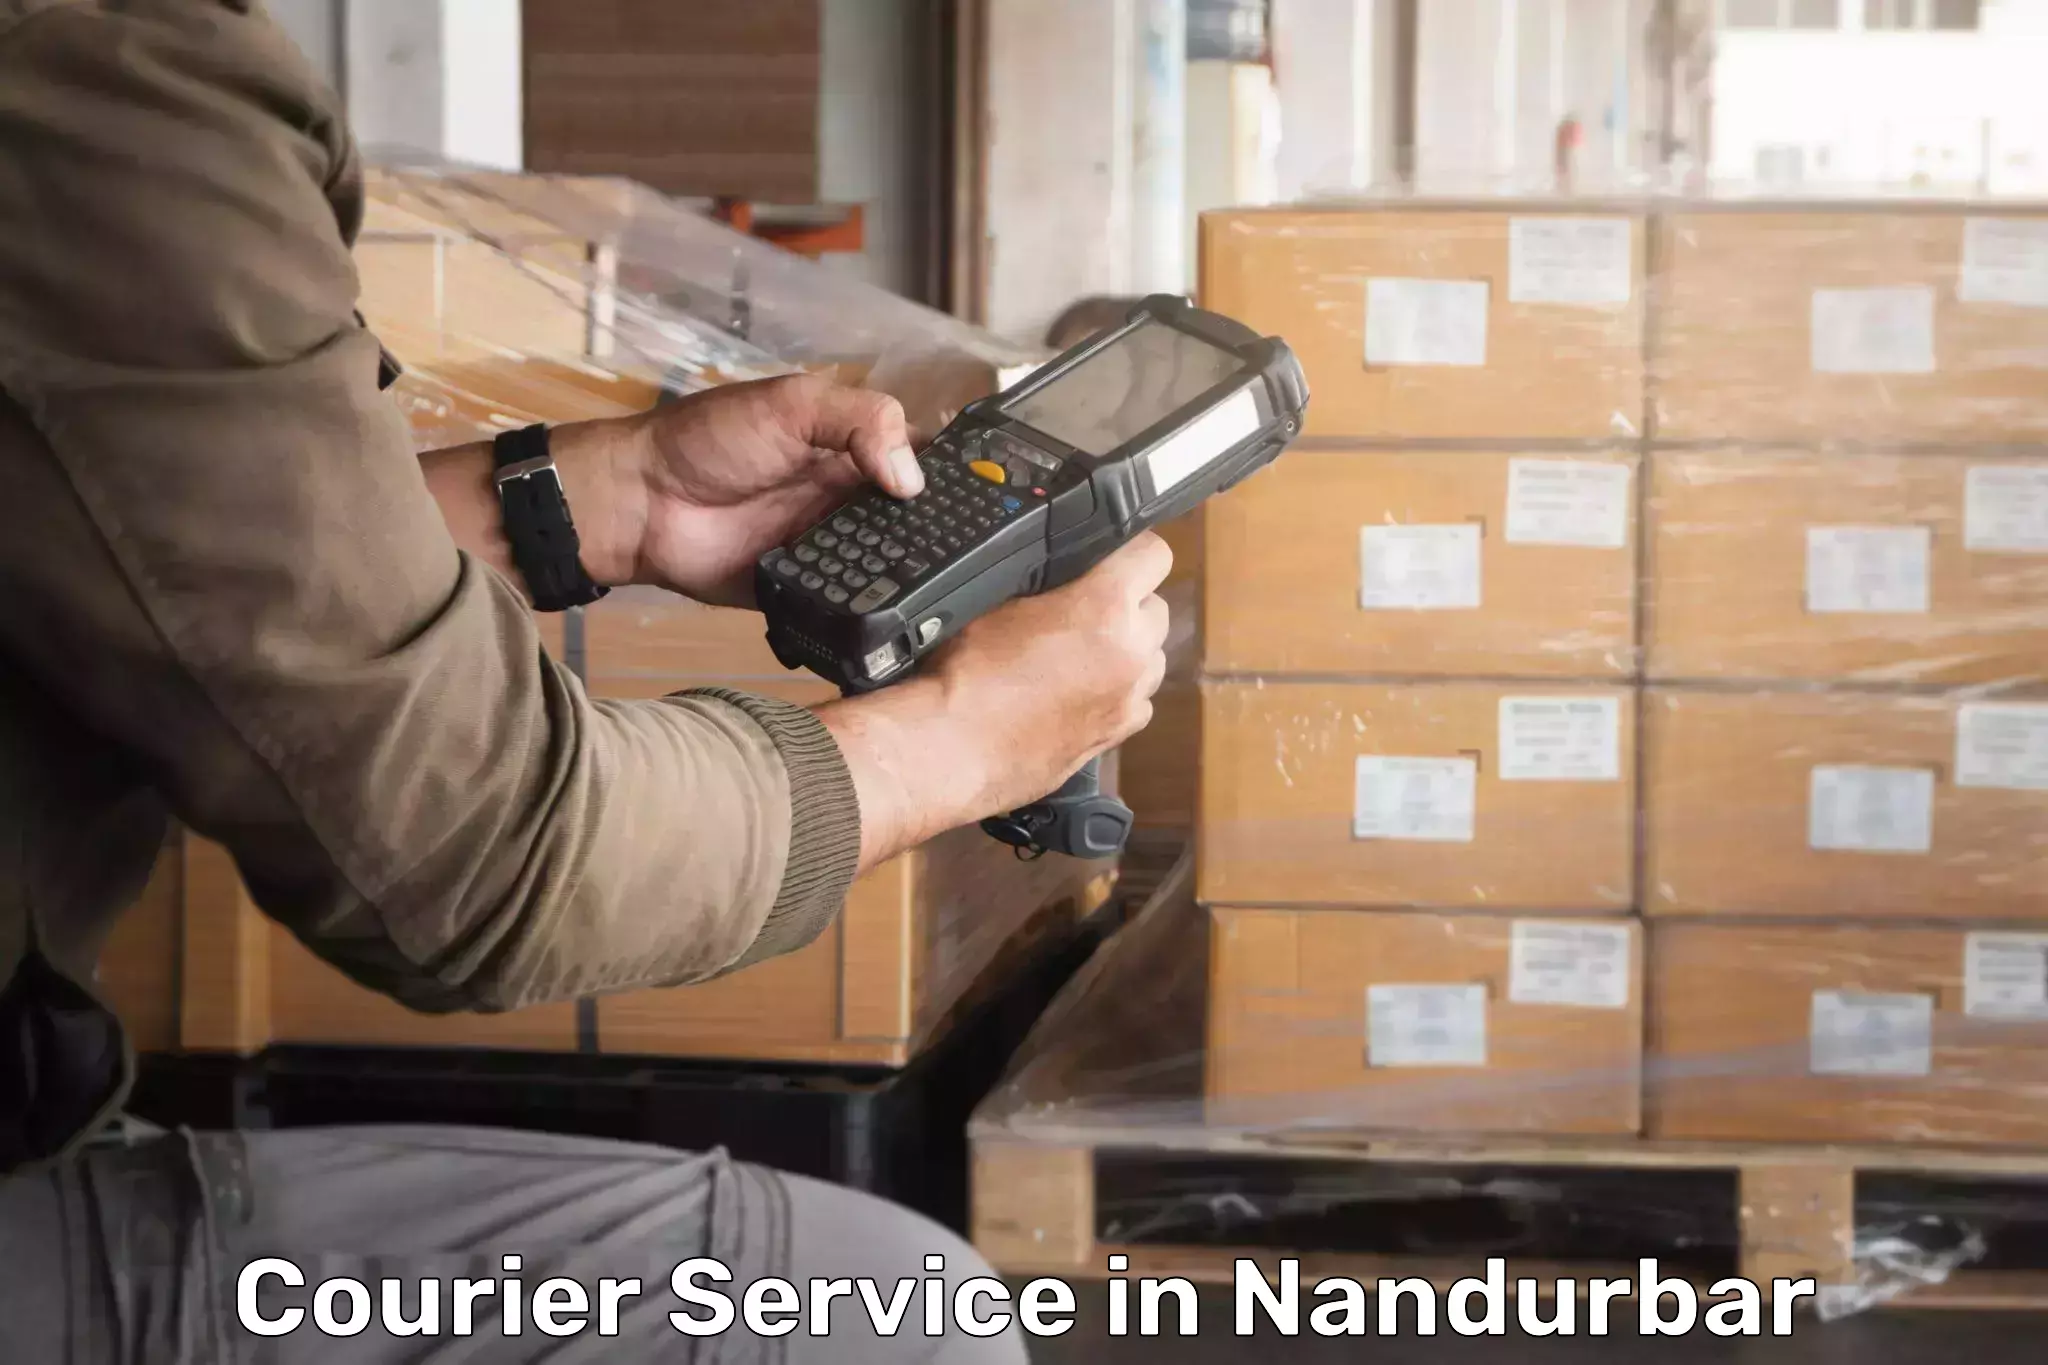 Express shipping in Nandurbar